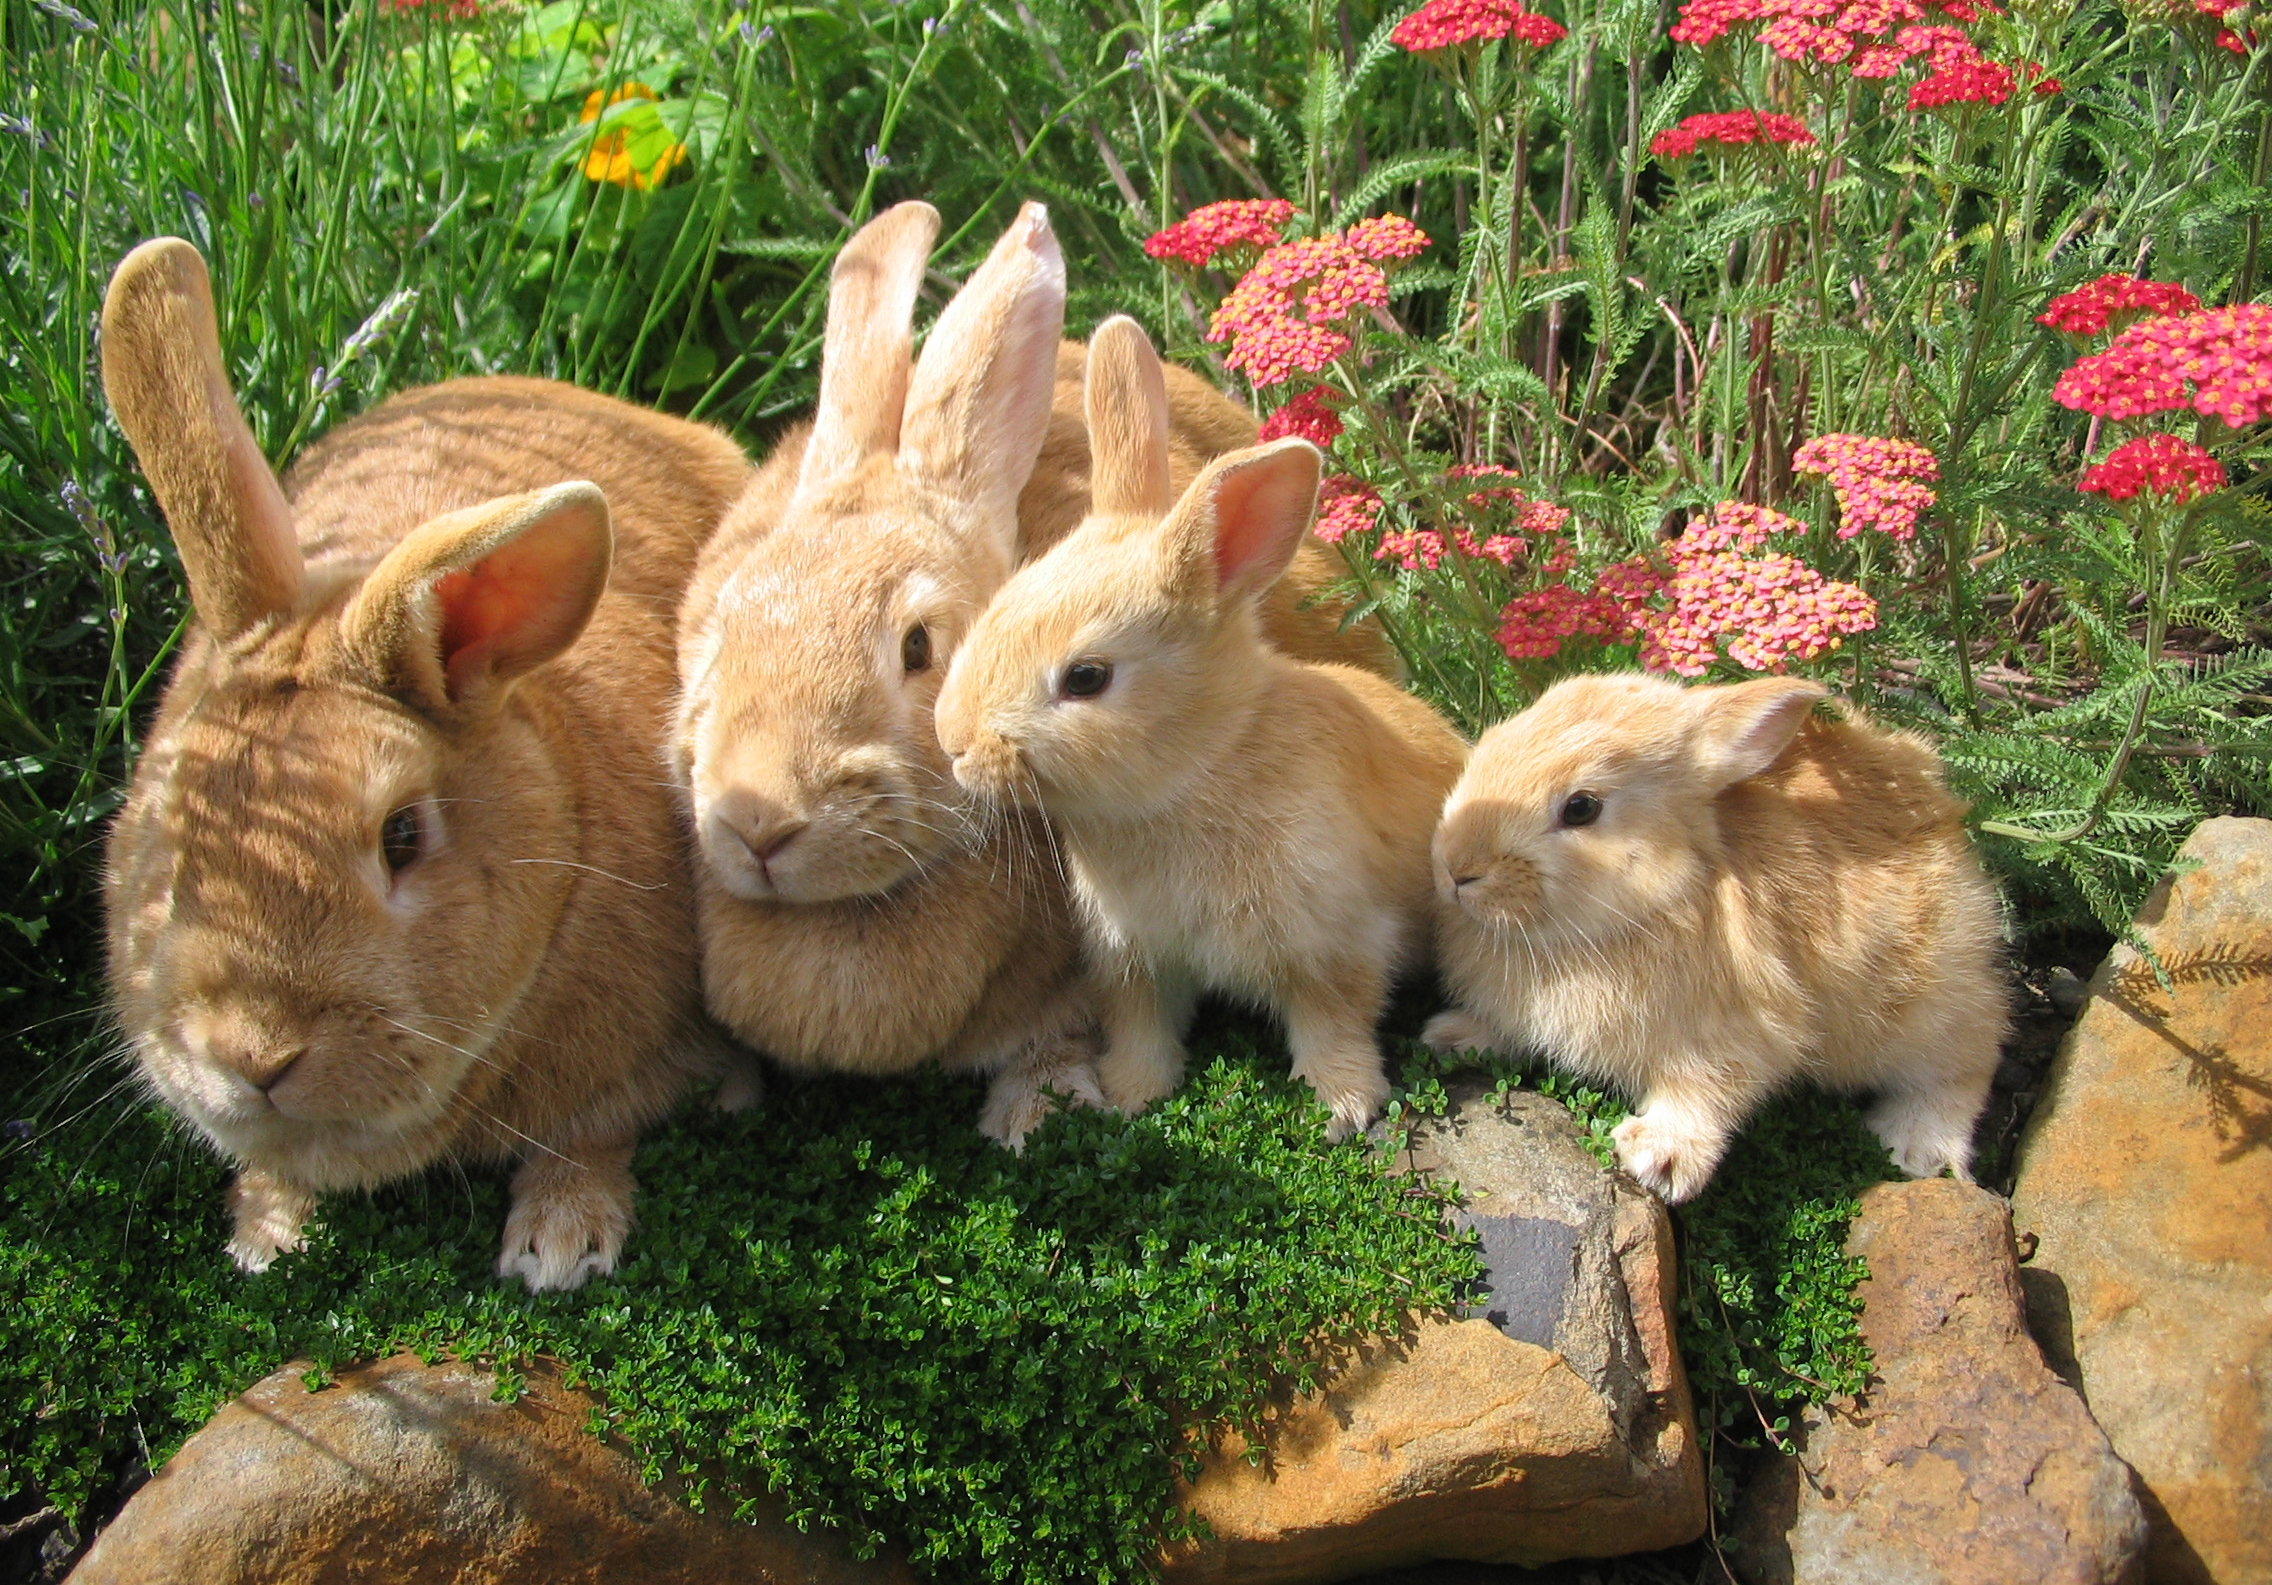 Семья кроликов